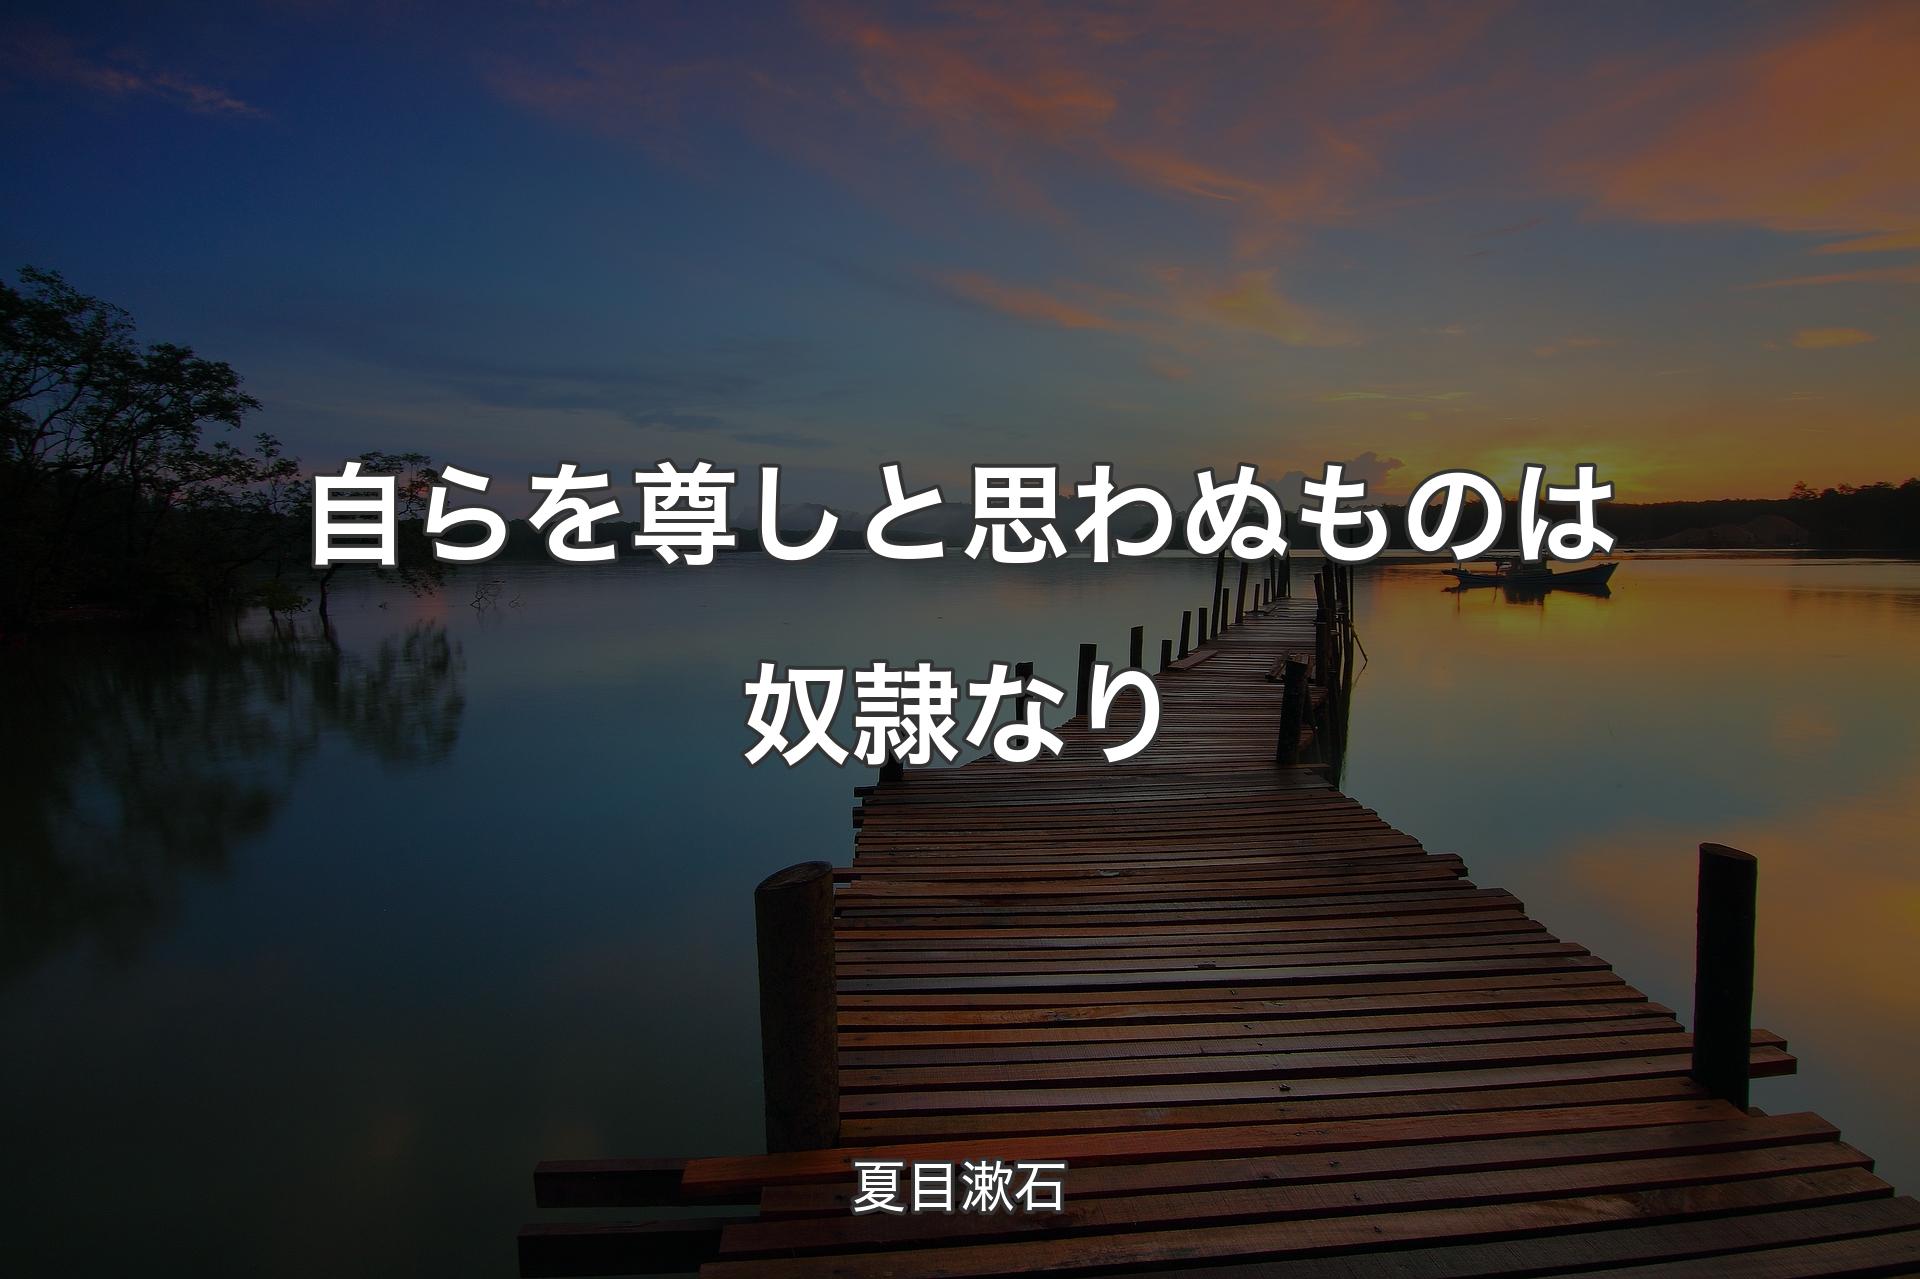 【背景3】自らを尊しと思わぬものは奴隷なり - 夏目漱石